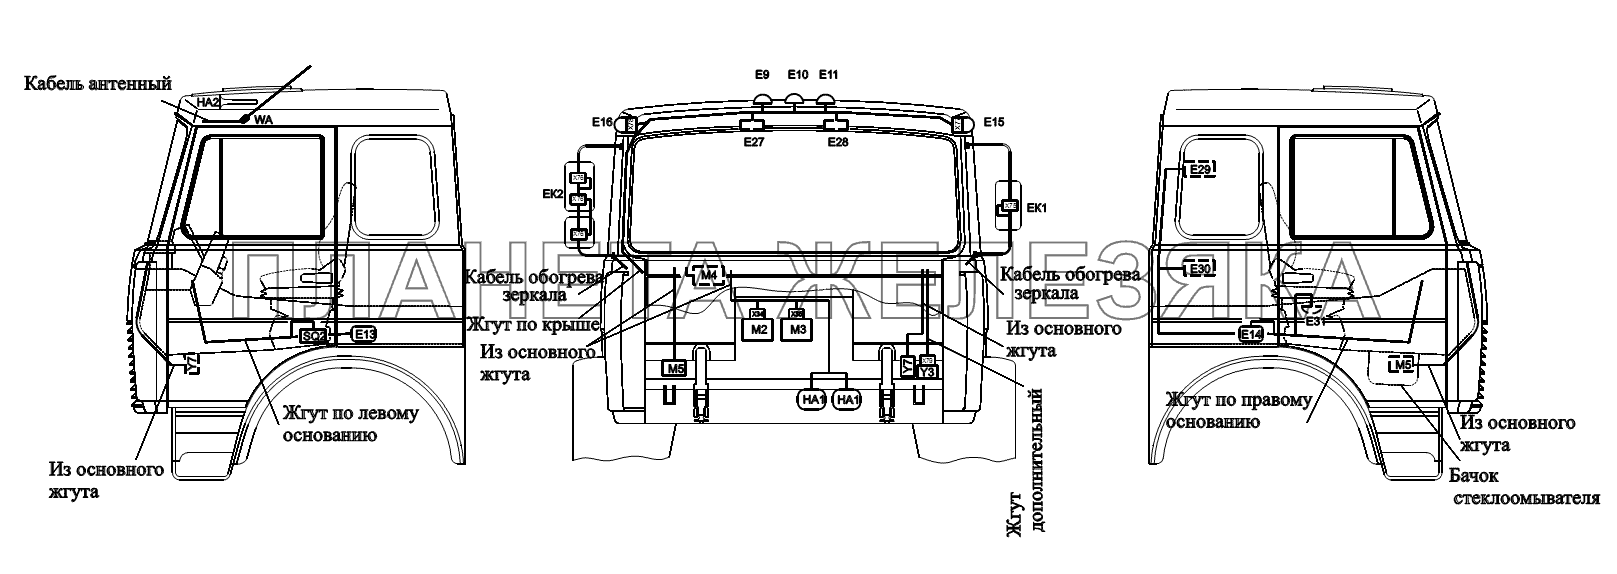 Расположение разъемов и элементов электрооборудования на большой кабине Автомобиля МАЗ-6422, 5432